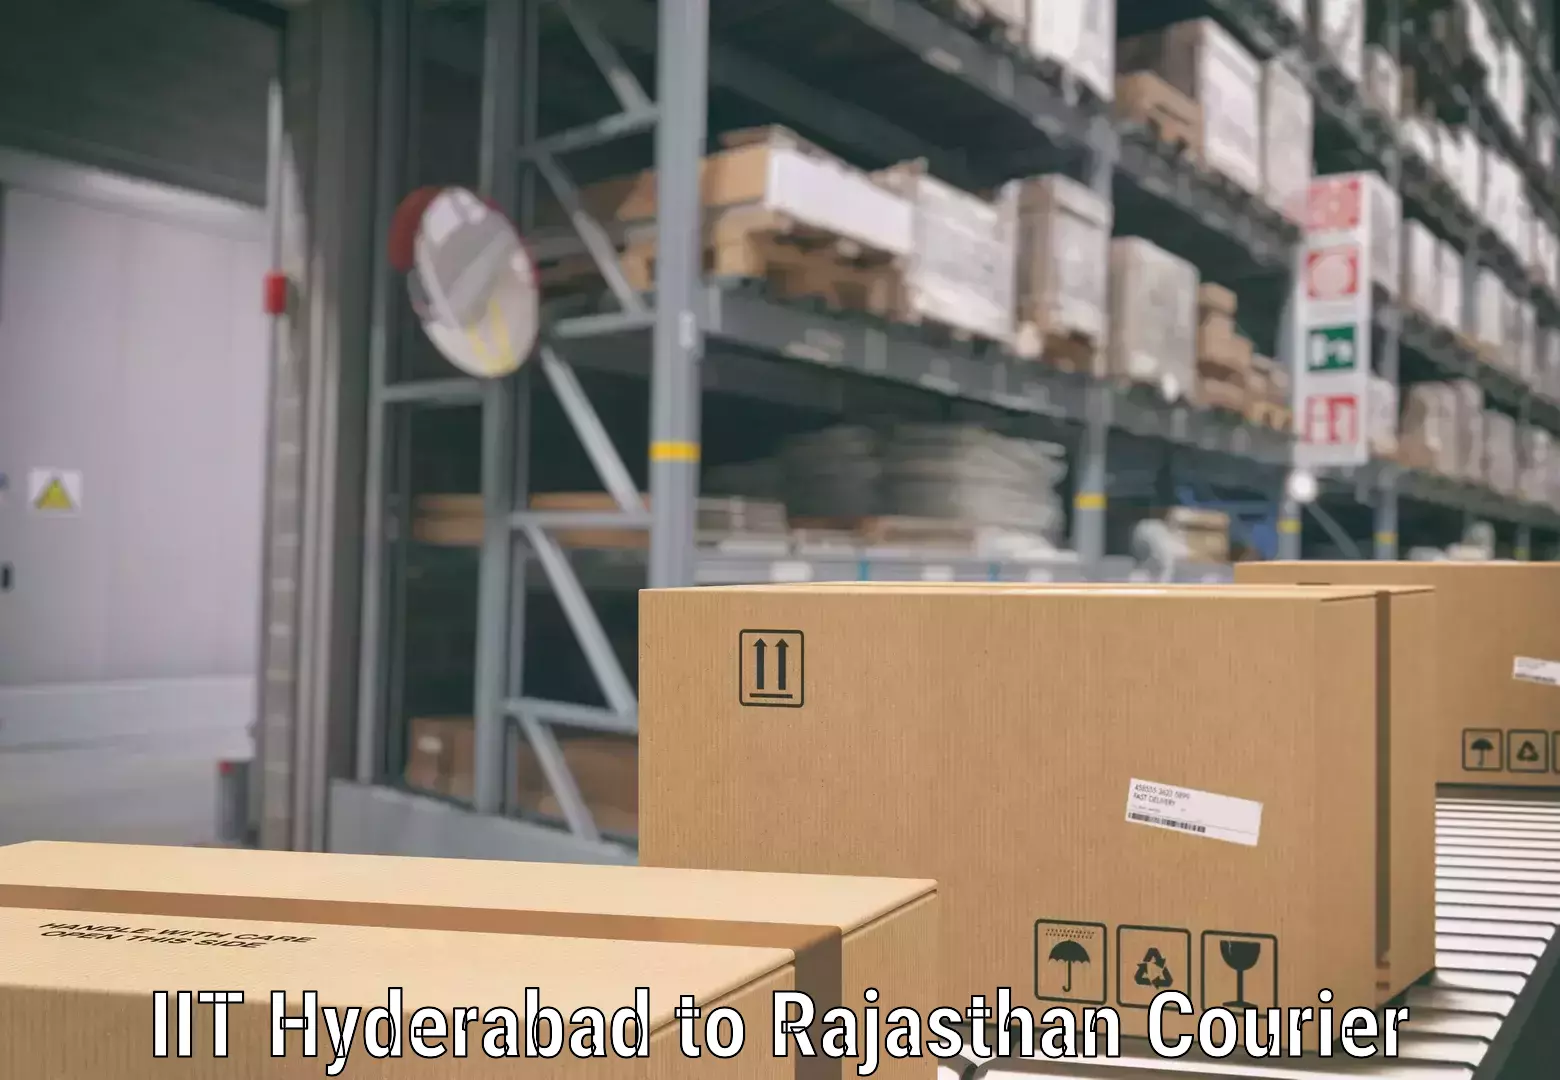 Luggage shipment specialists IIT Hyderabad to Bandikui